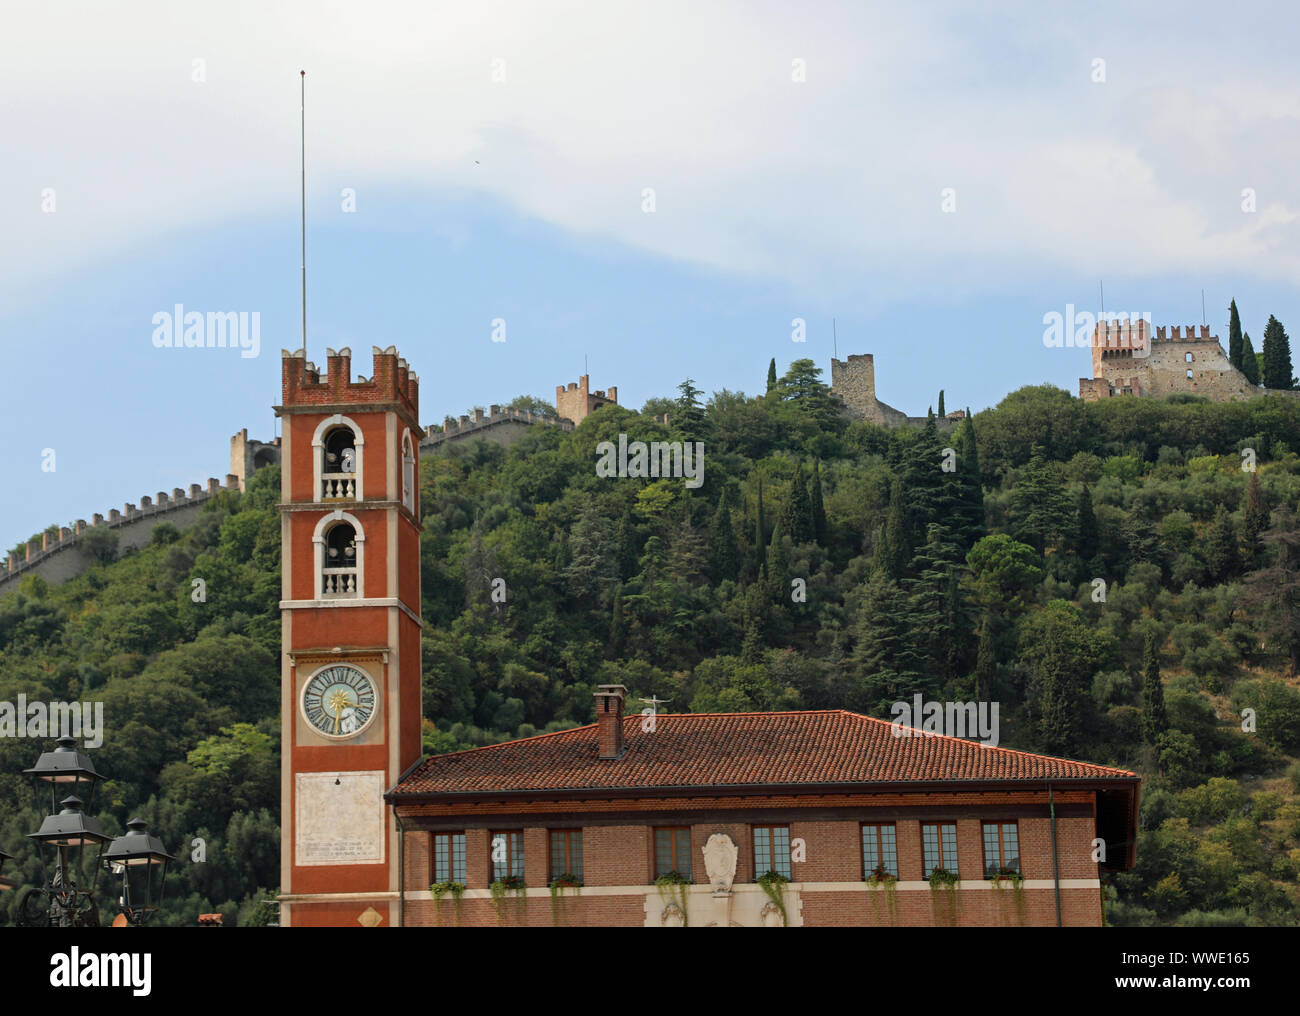 Schiavon, VI, Italie - 1 septembre 2019 : Ancien bâtiment sur la place principale de la ville et le château sur la colline Banque D'Images